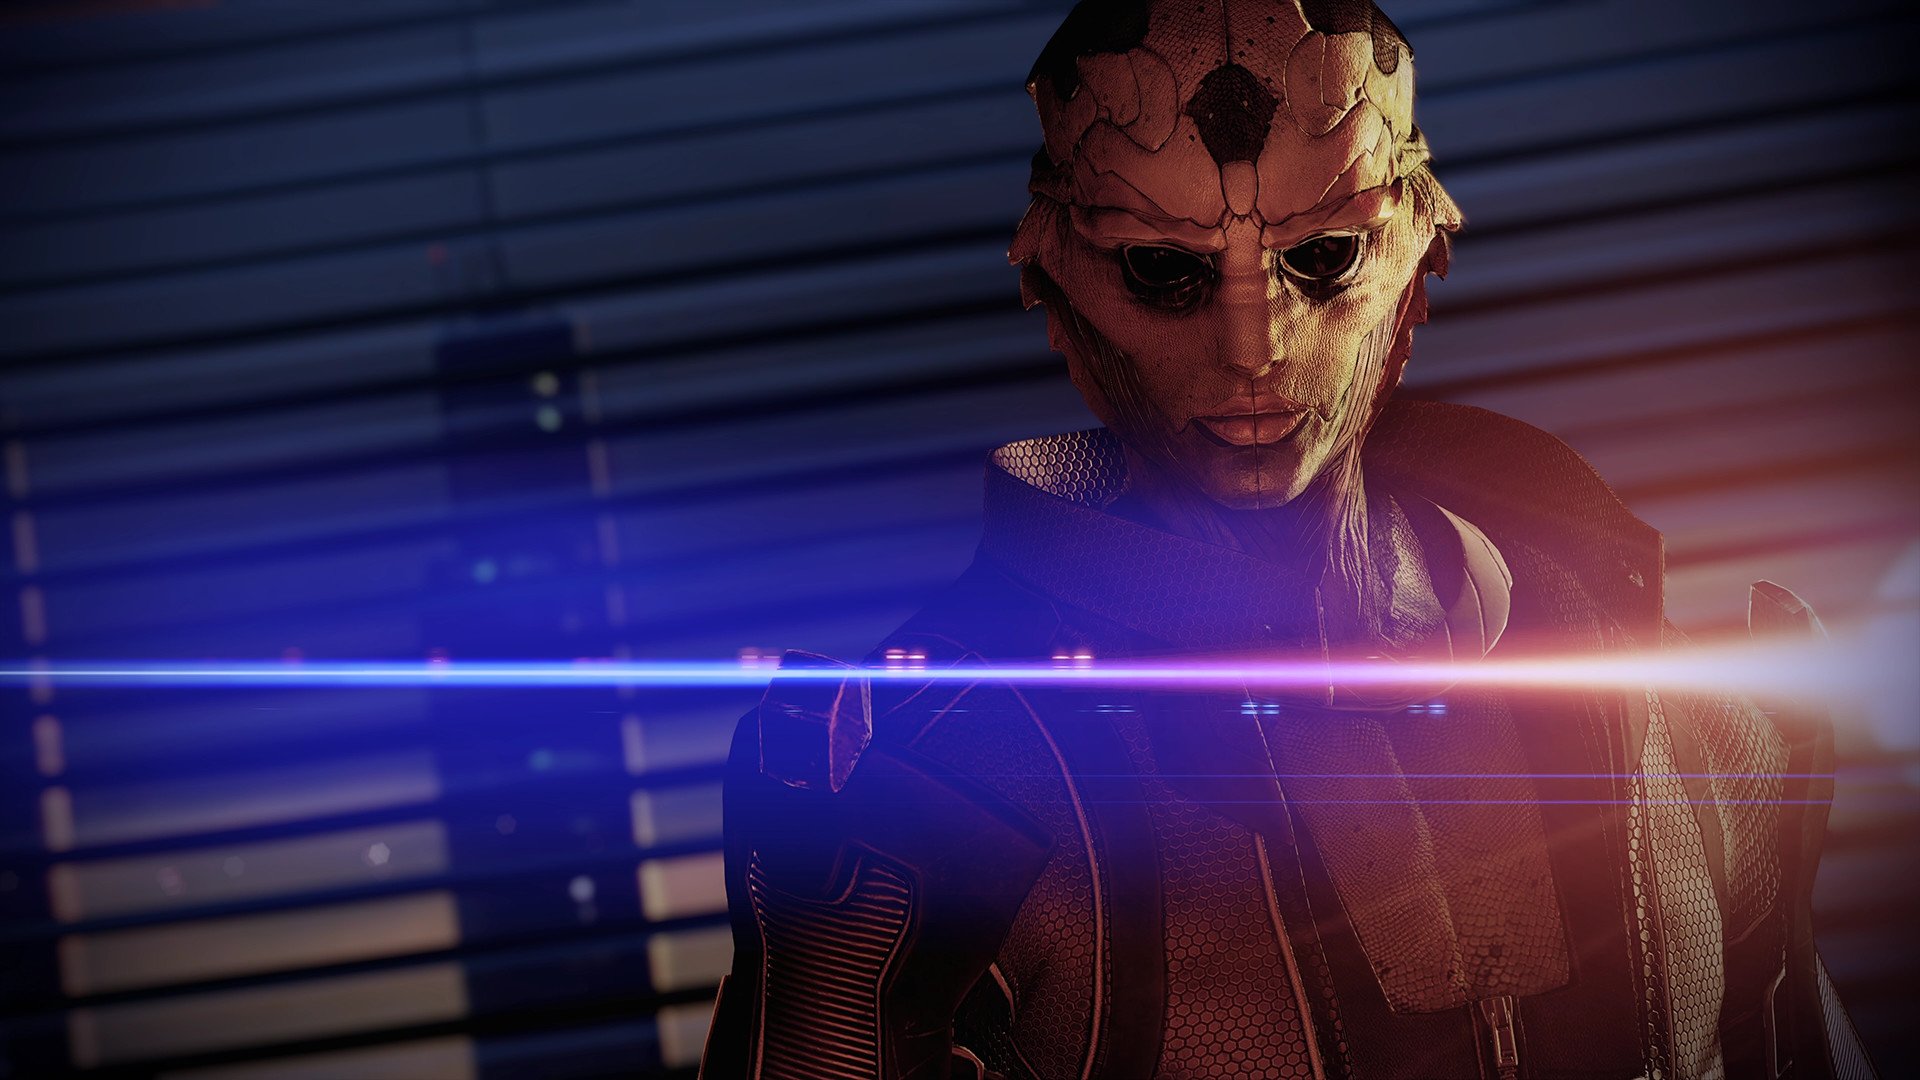 Mass Effect: Legendary Edition 2020 - Character